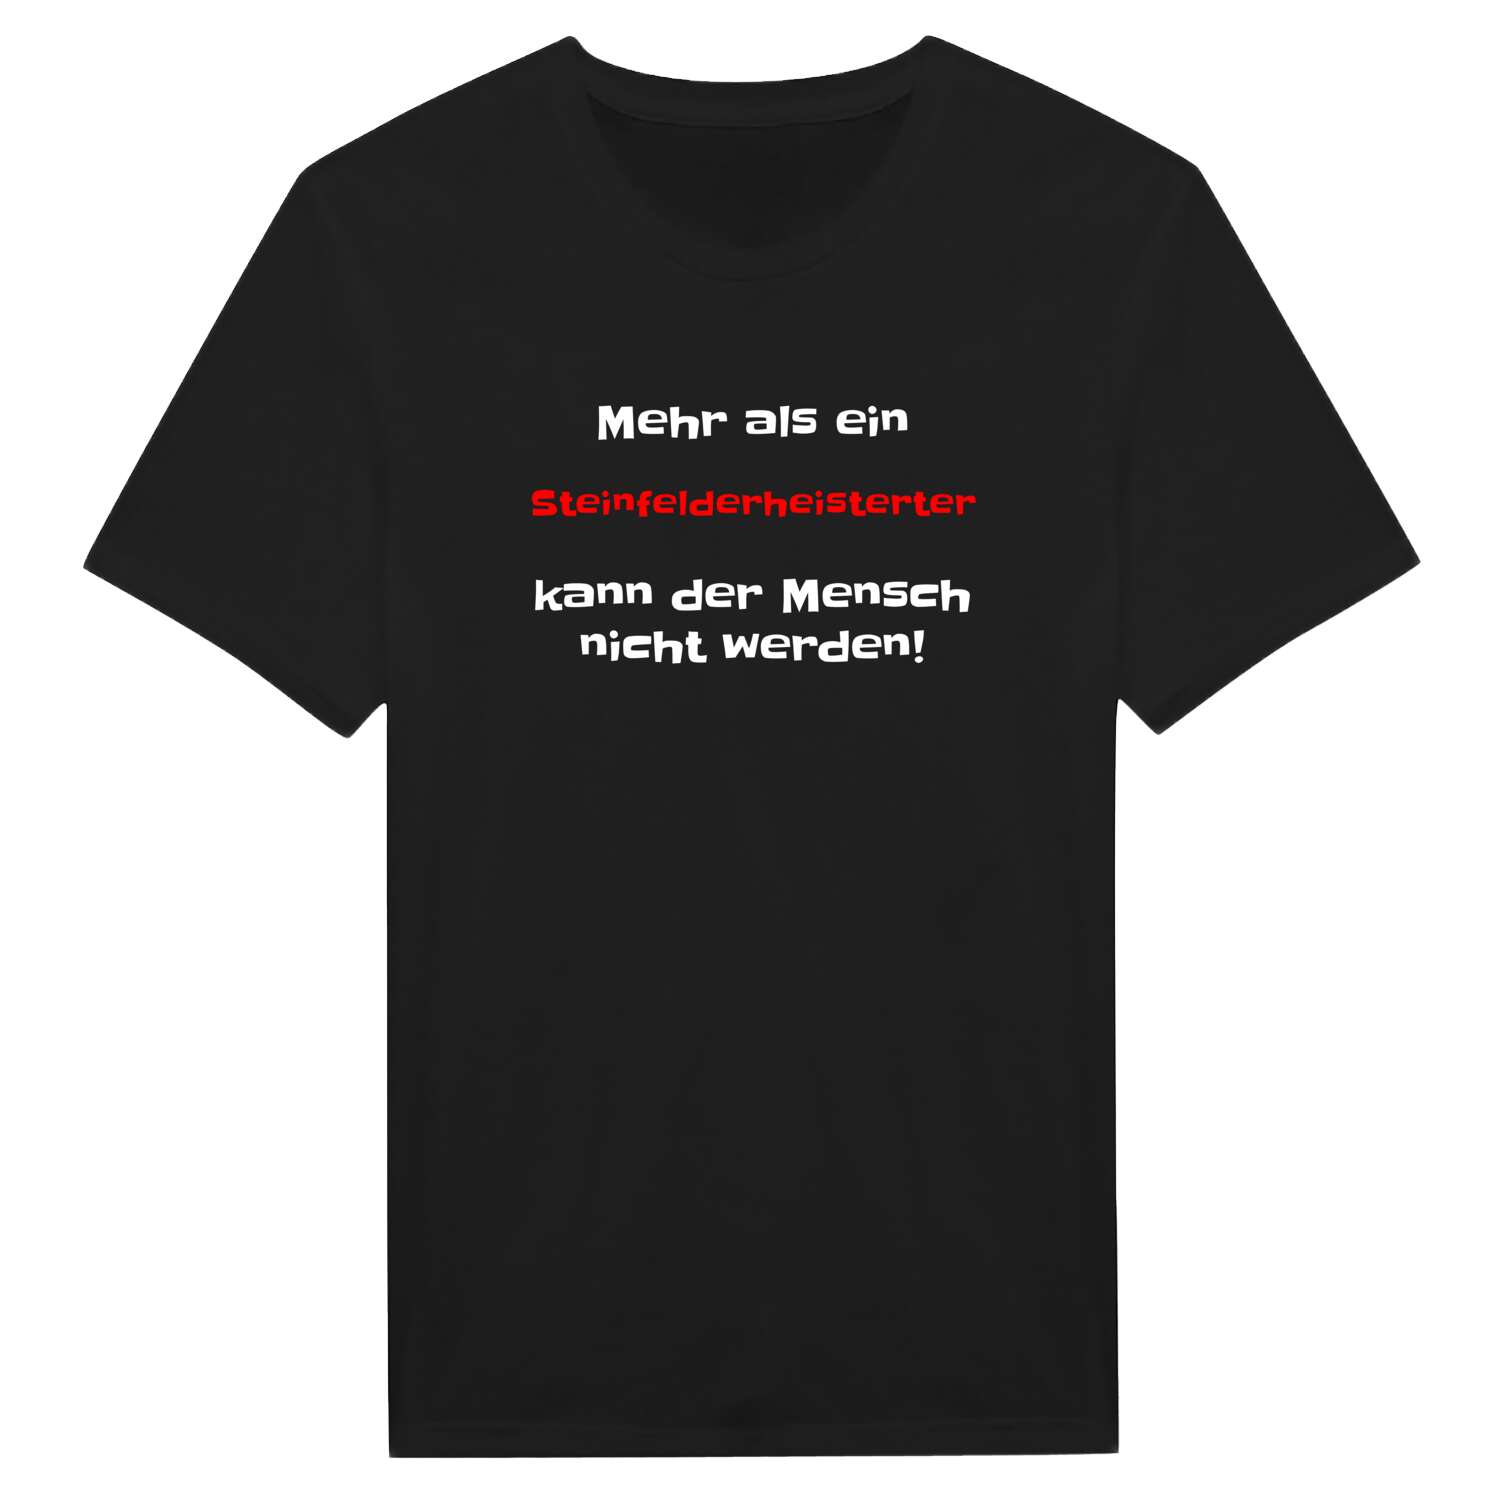 Steinfelderheistert T-Shirt »Mehr als ein«